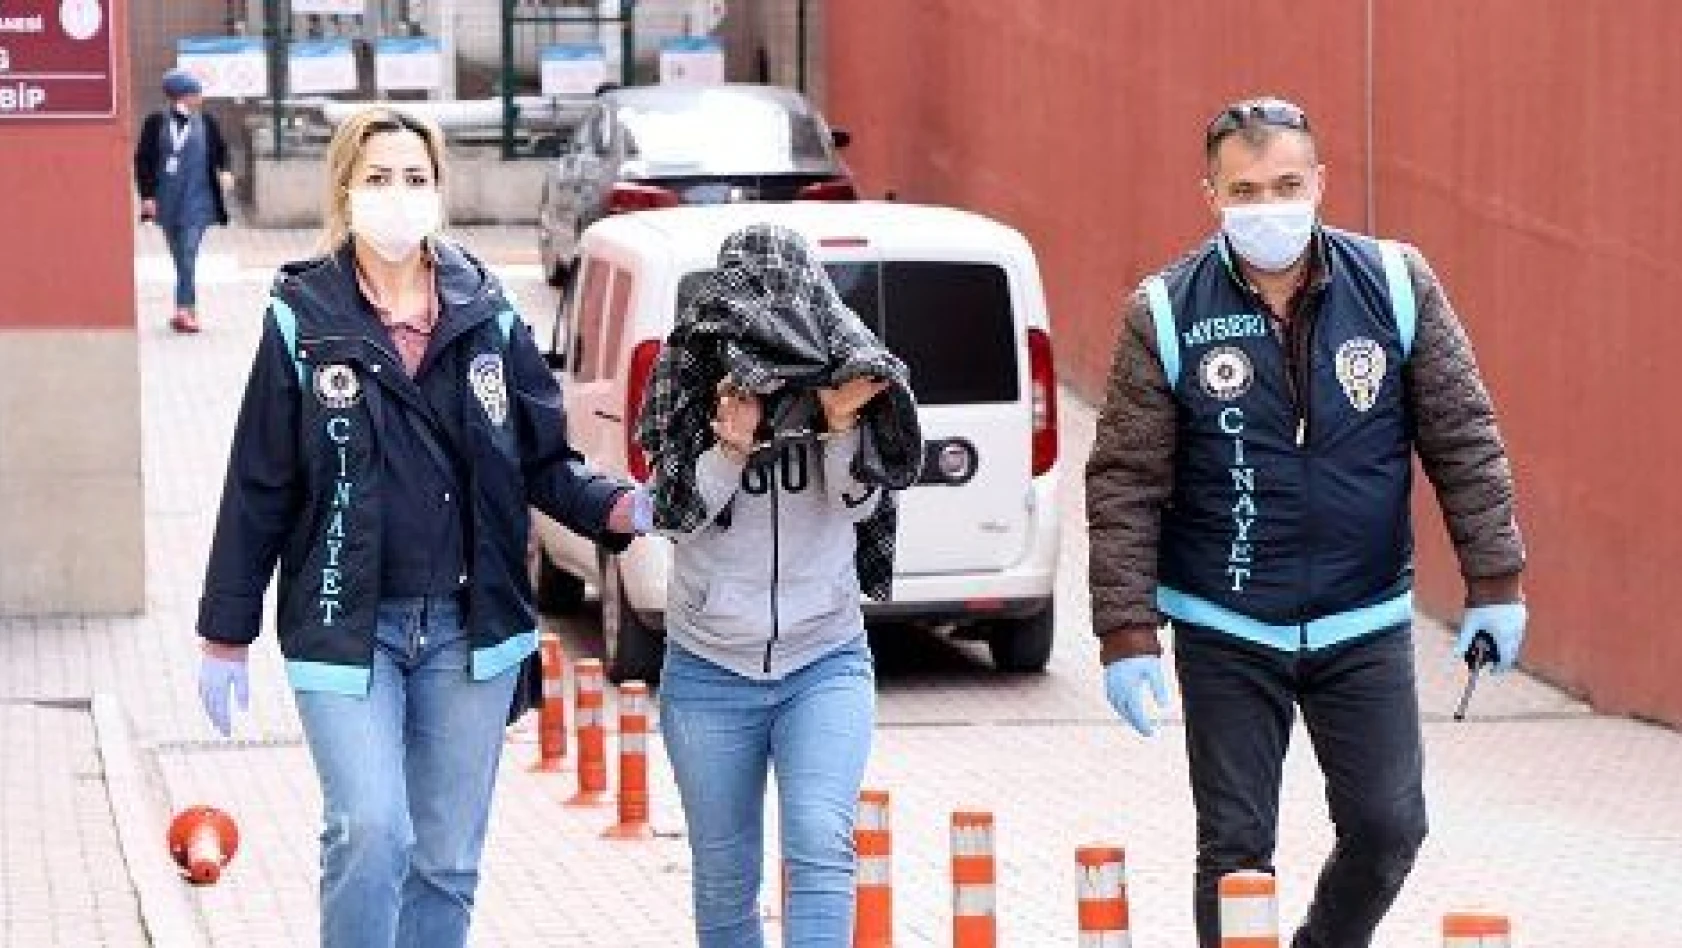 Kayseri'de bağ evinde erkek arkadaşını öldüren kadın yakalandı